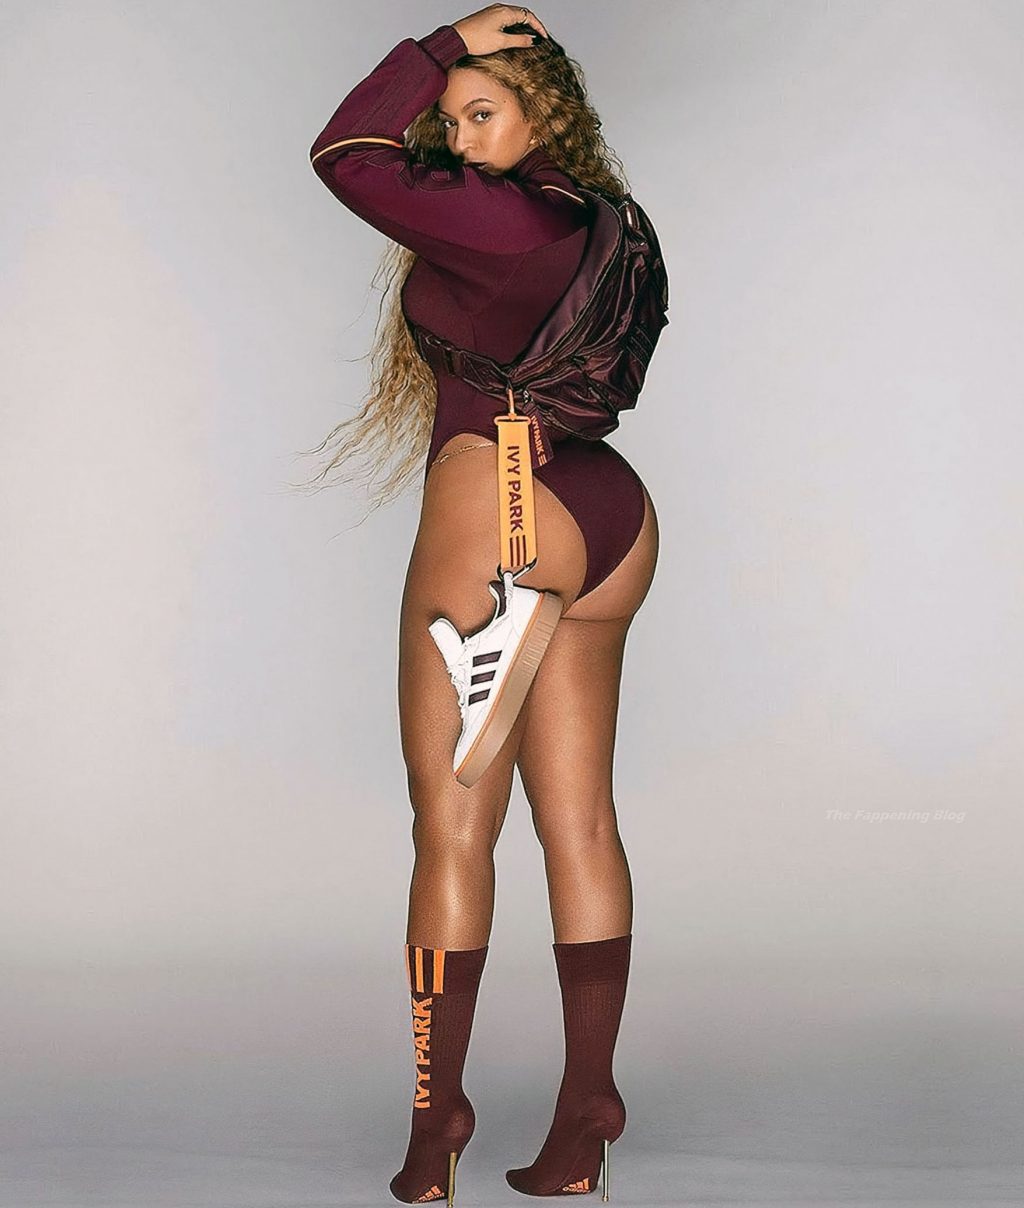 Beyonce butt